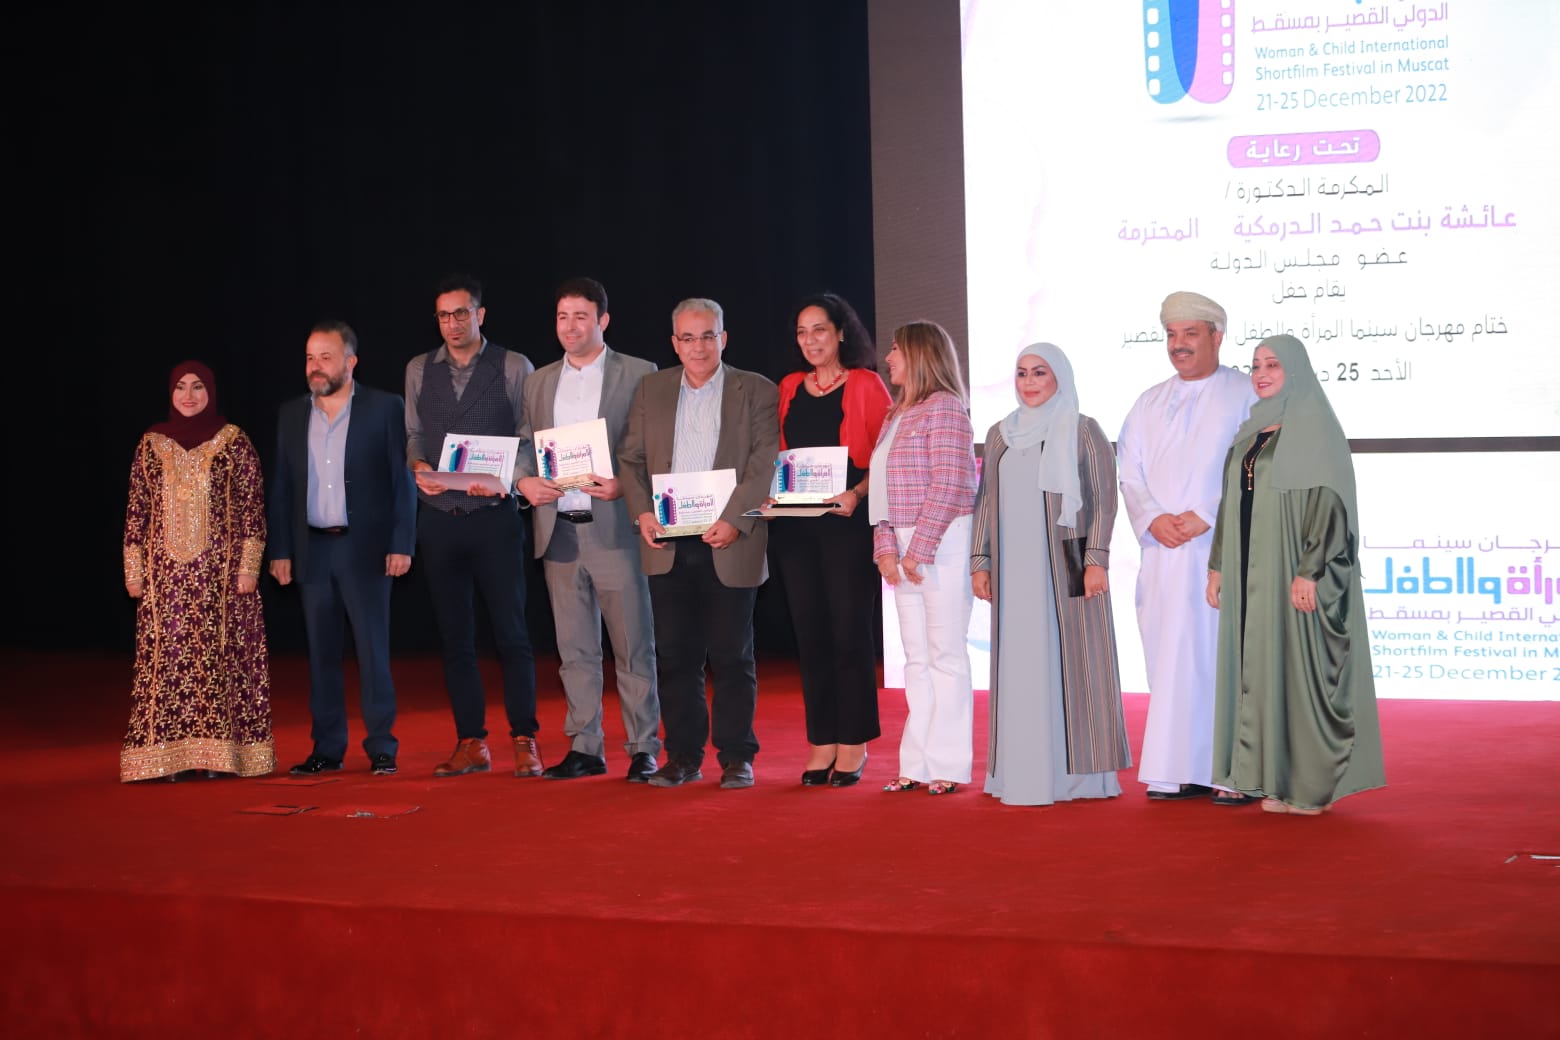 فيلم مصري (دير وارد) يفوز بجائزة أفضل فيلم روائي في مهرجان مسقط الدولي للفيلم القصير للمرأة والطفل (2)